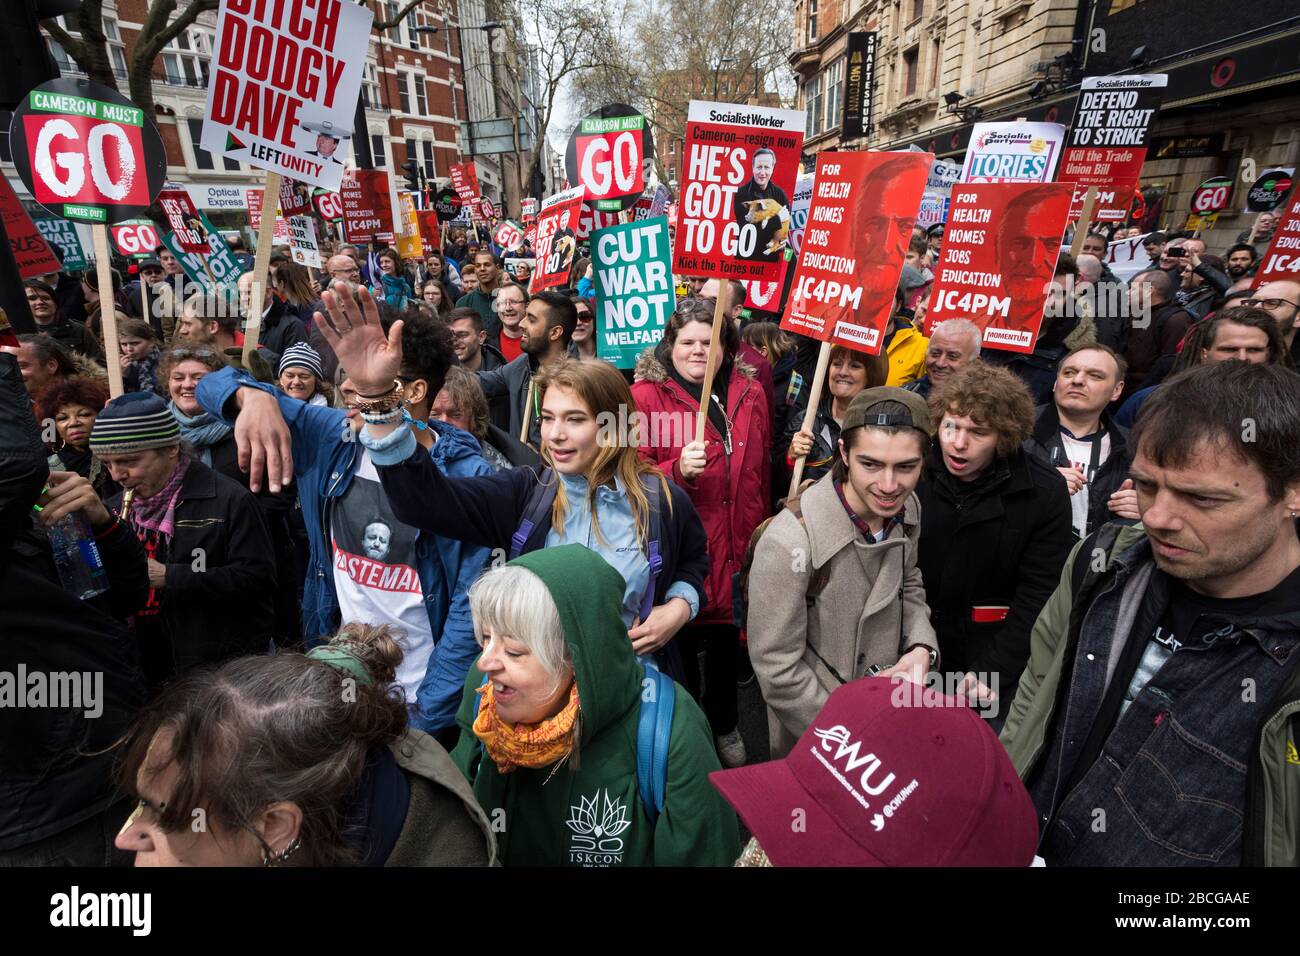 Foule de manifestants lors d'une manifestation anti-austérité à Londres Banque D'Images